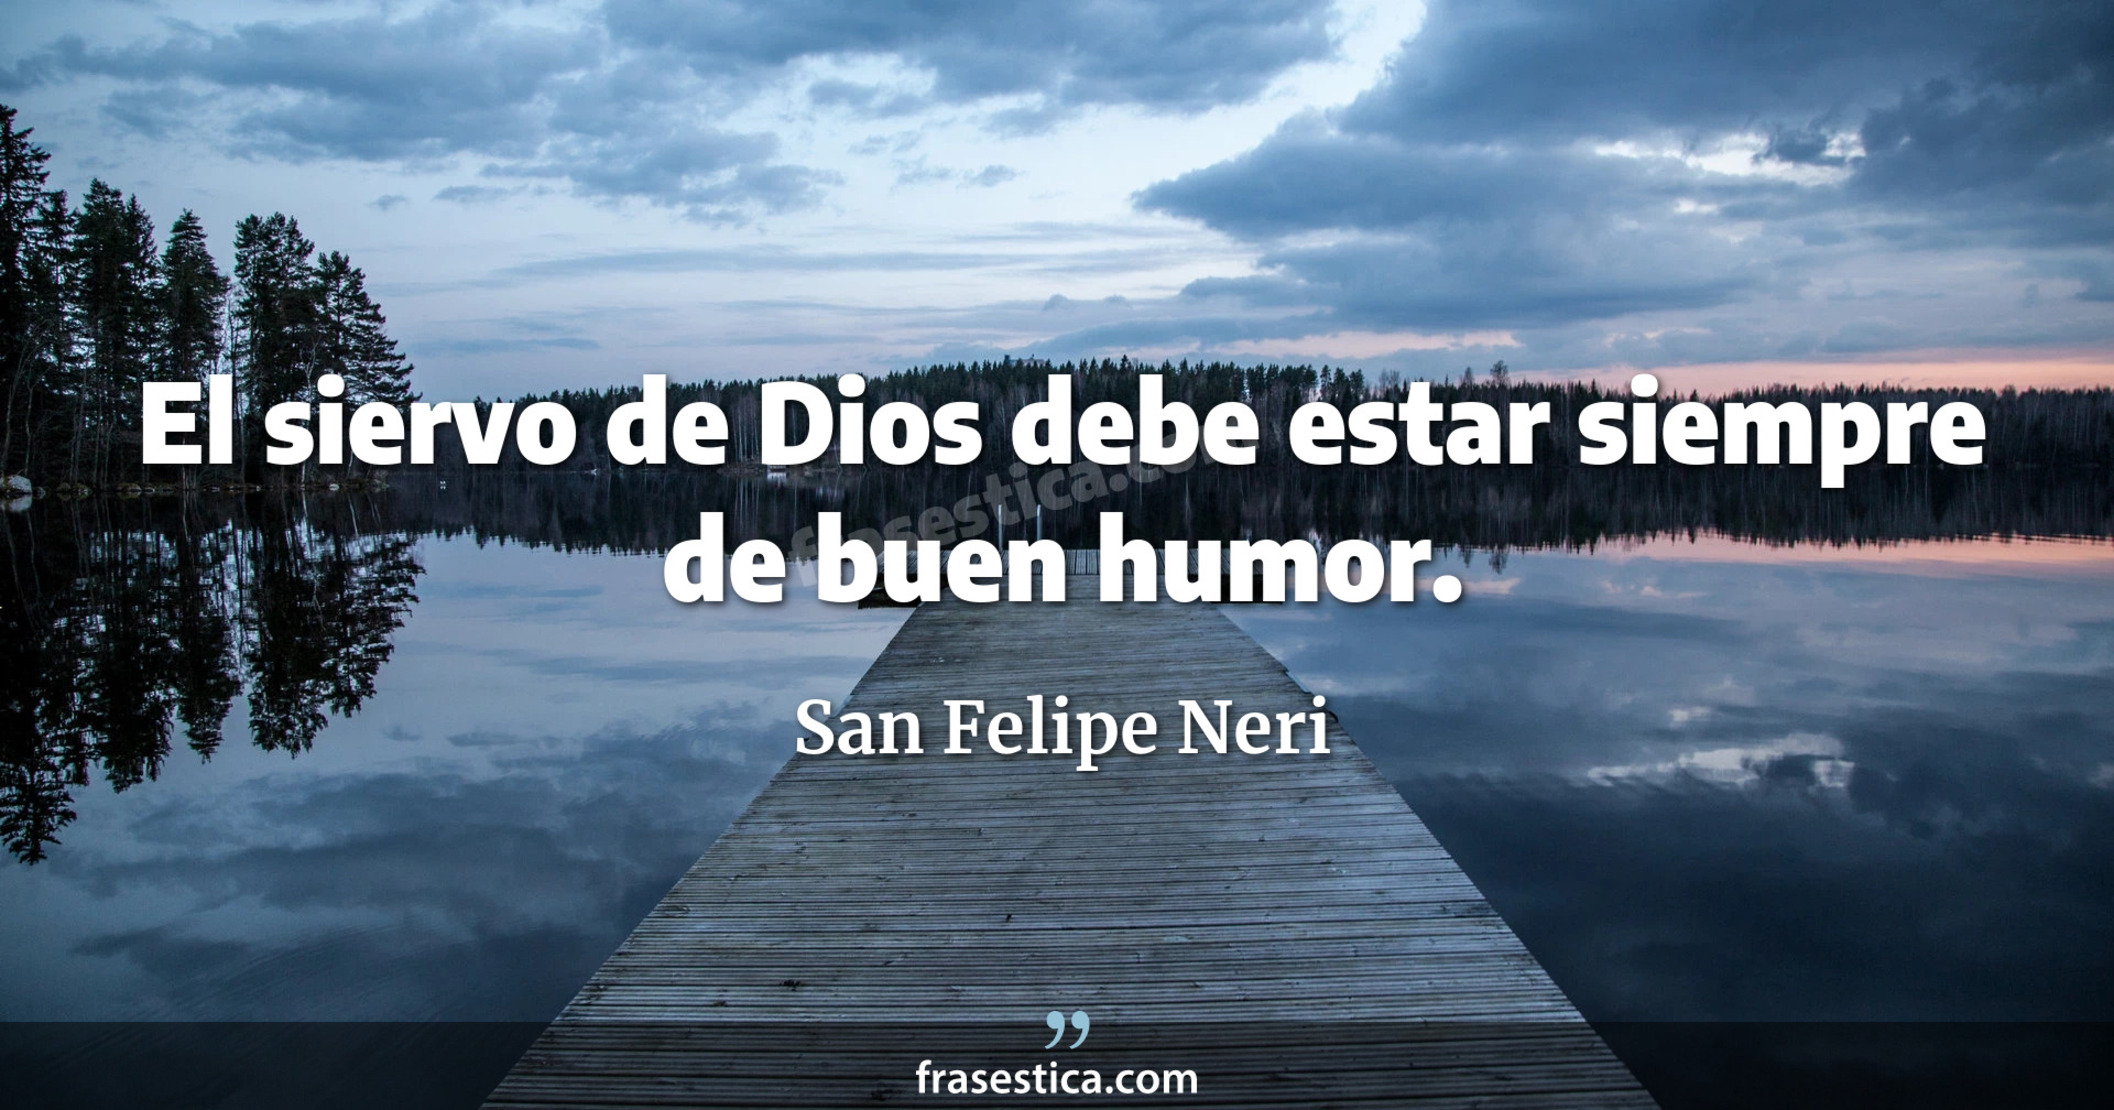 El siervo de Dios debe estar siempre de buen humor. - San Felipe Neri